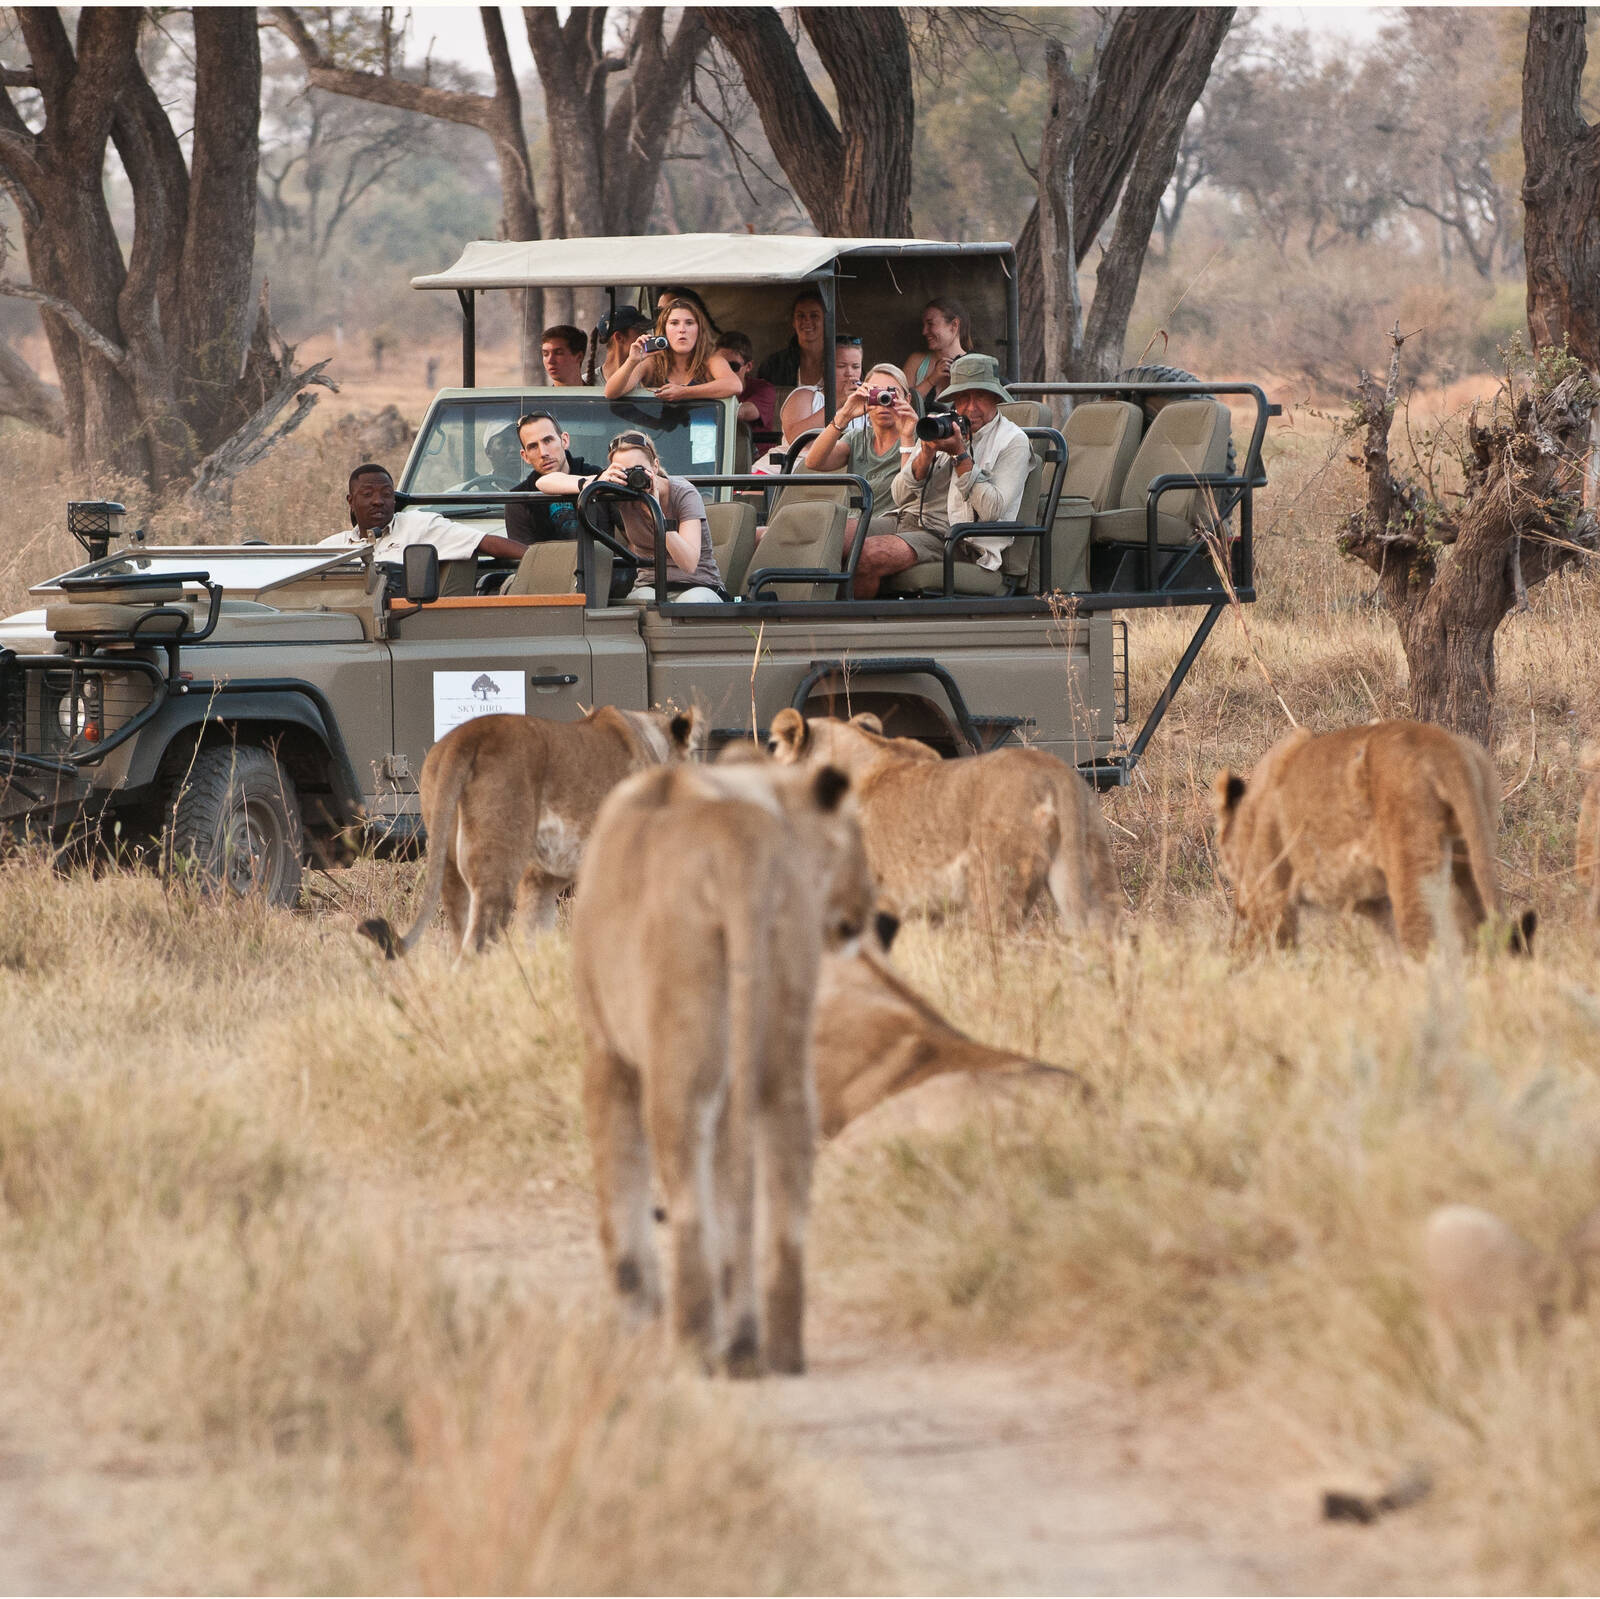 safari in botswana or tanzania